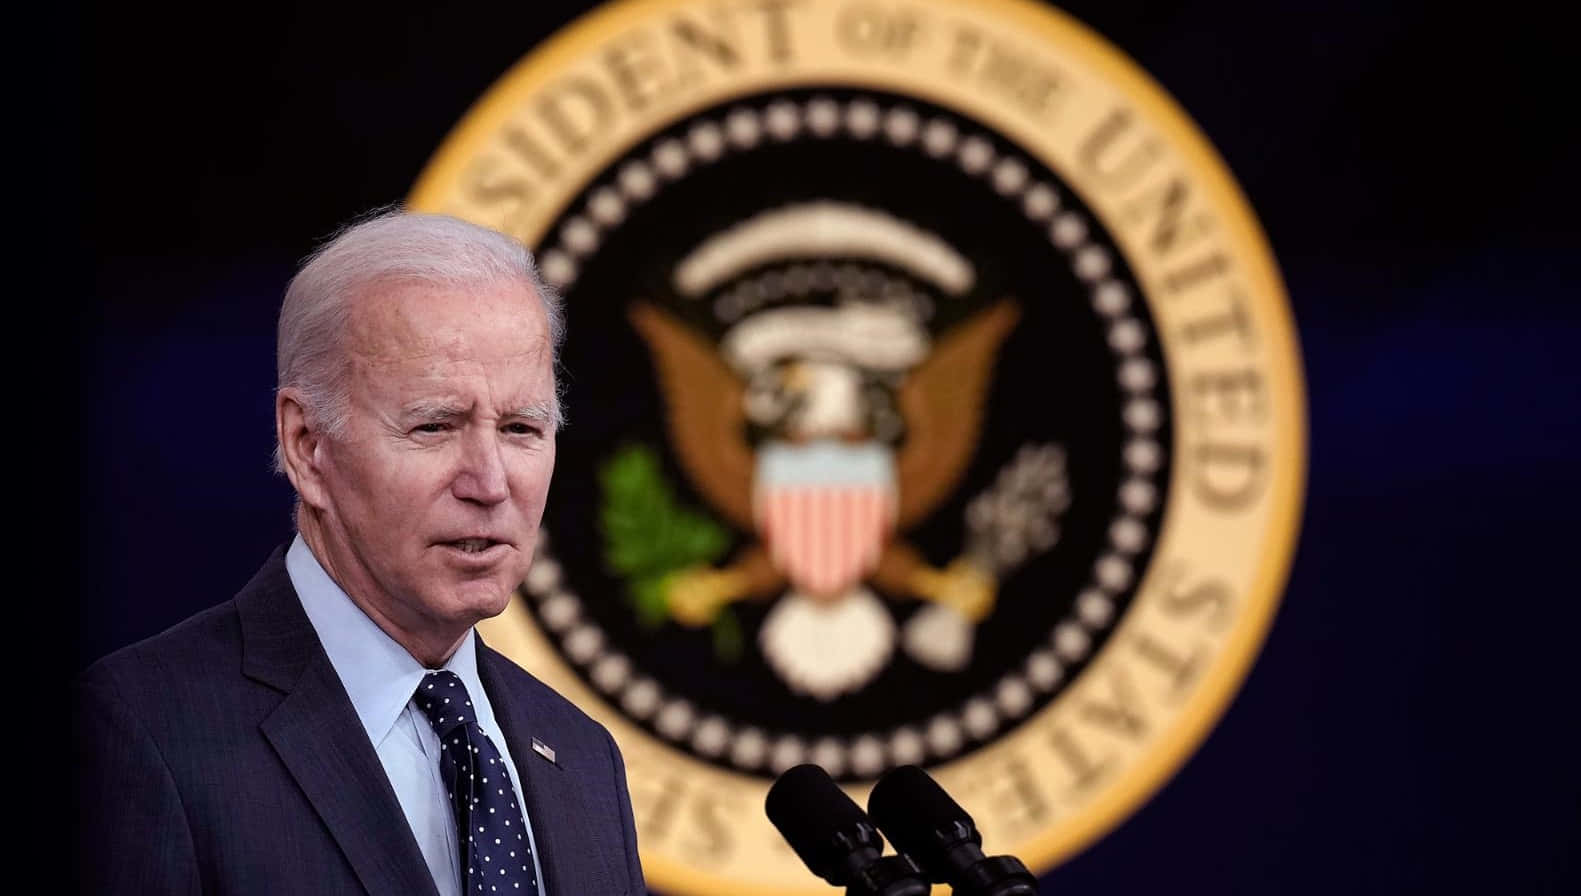 Joe Biden speaks to a large crowd